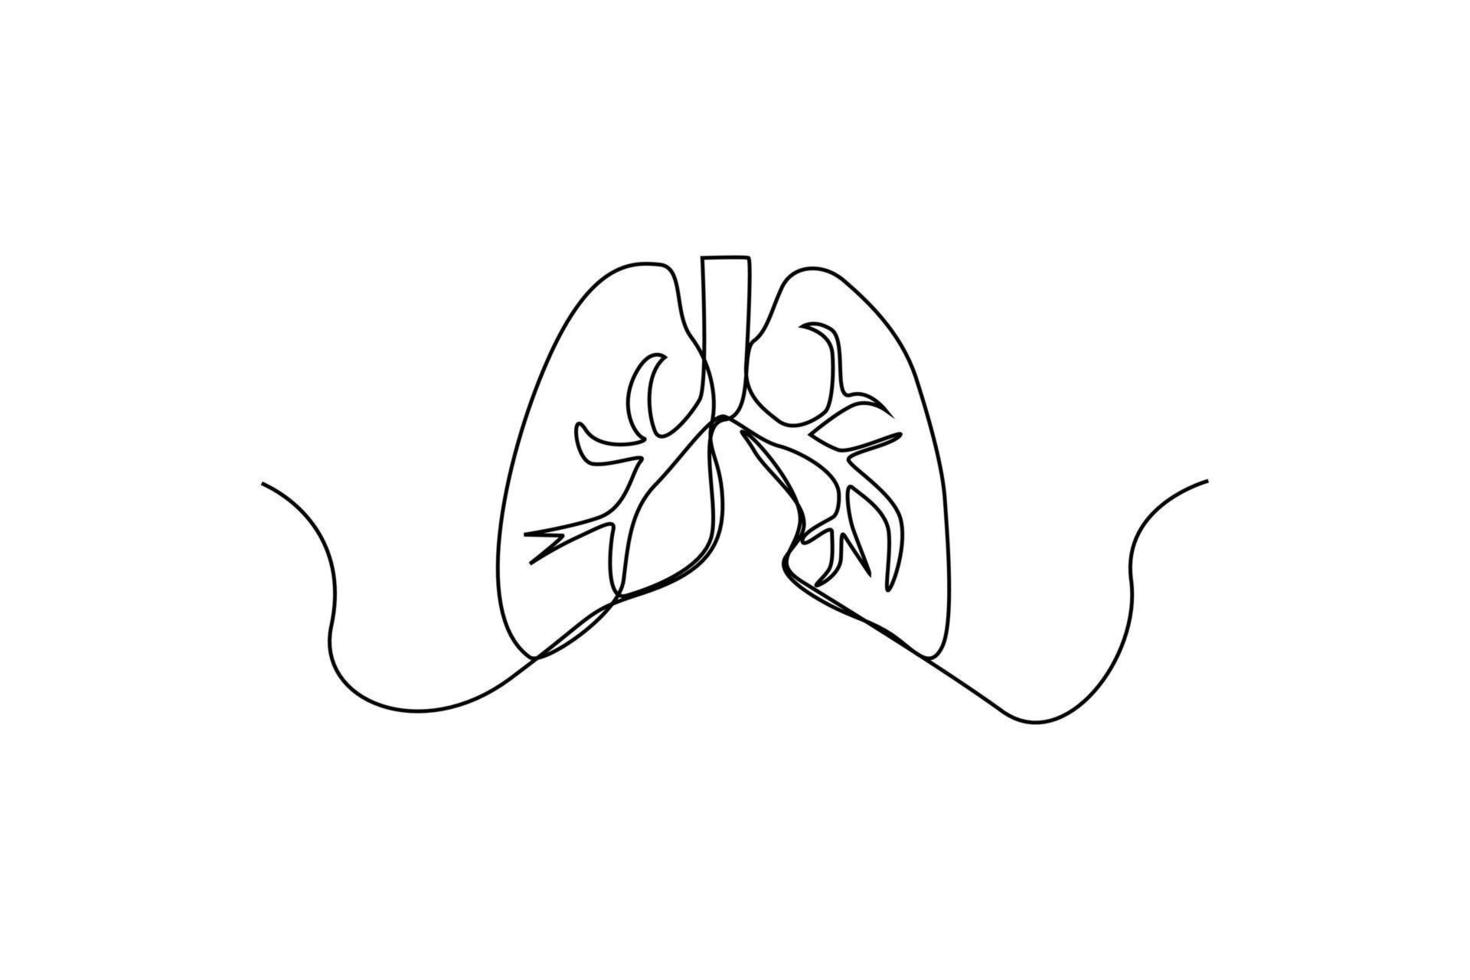 single een lijn tekening gezond longen zonder sigaret rook. wereld Gezondheid dag concept. doorlopend lijn tekening ontwerp grafisch vector illustratie.